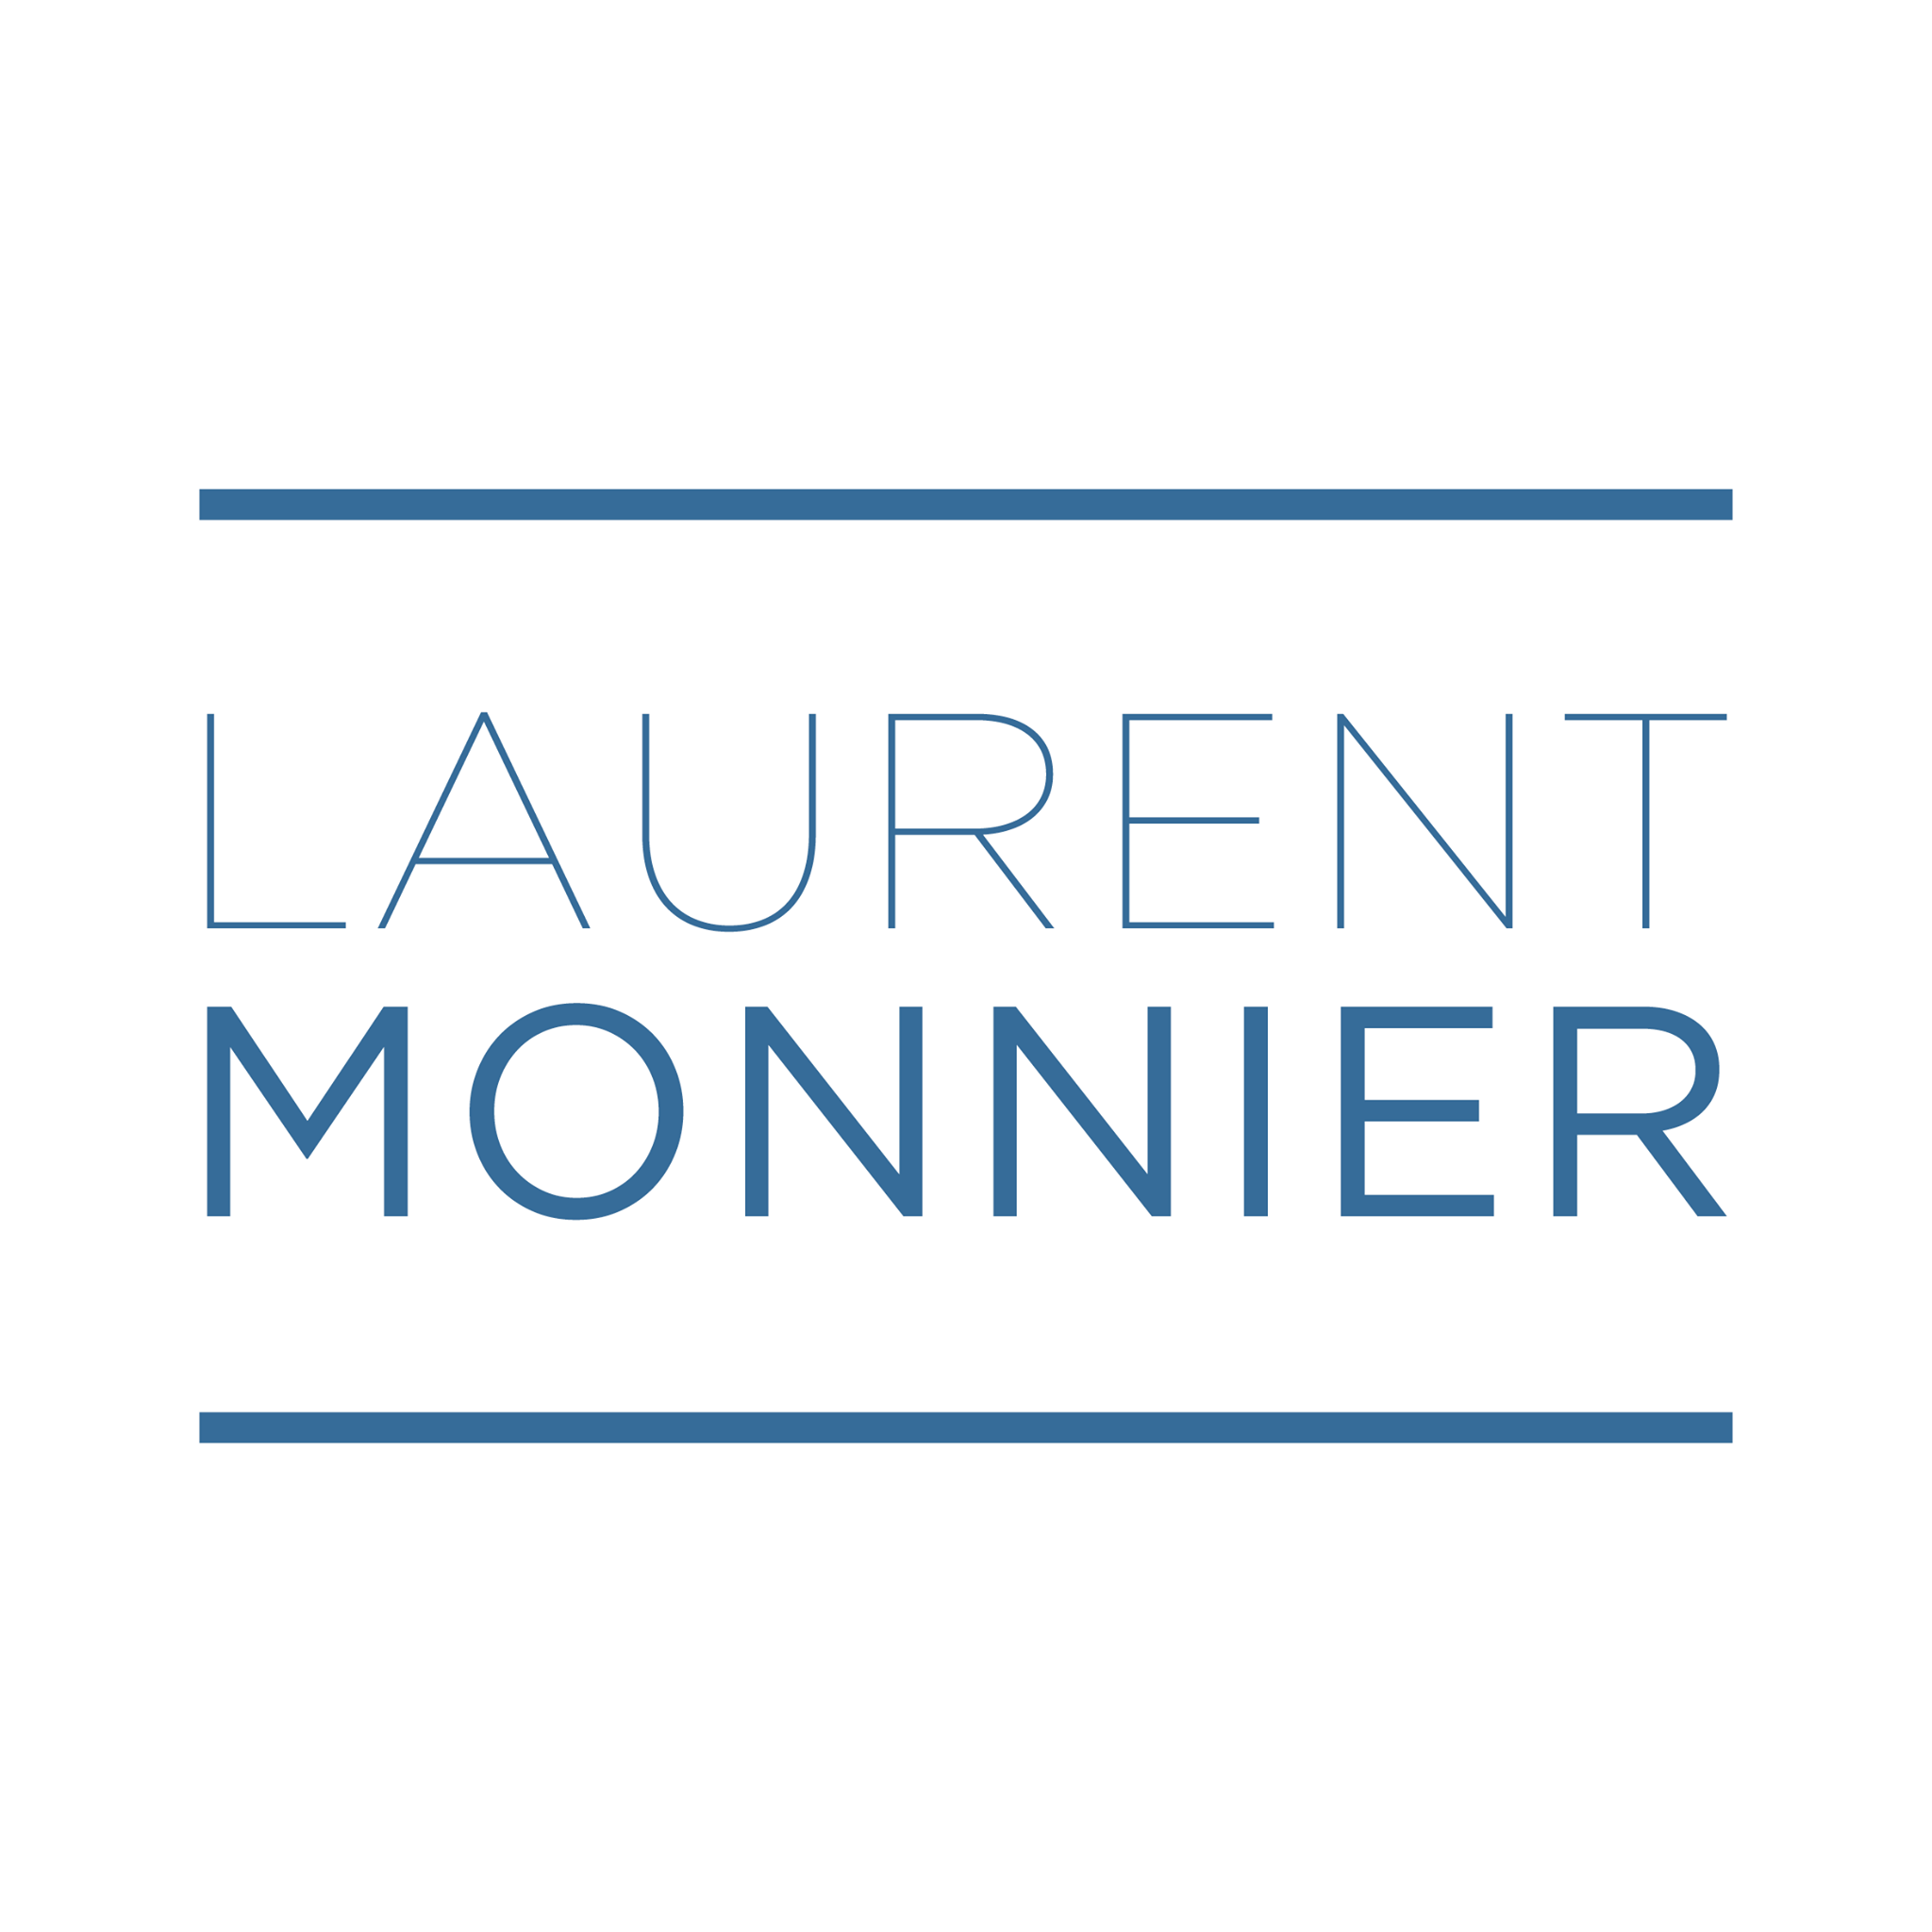 Monnier Laurent Logo